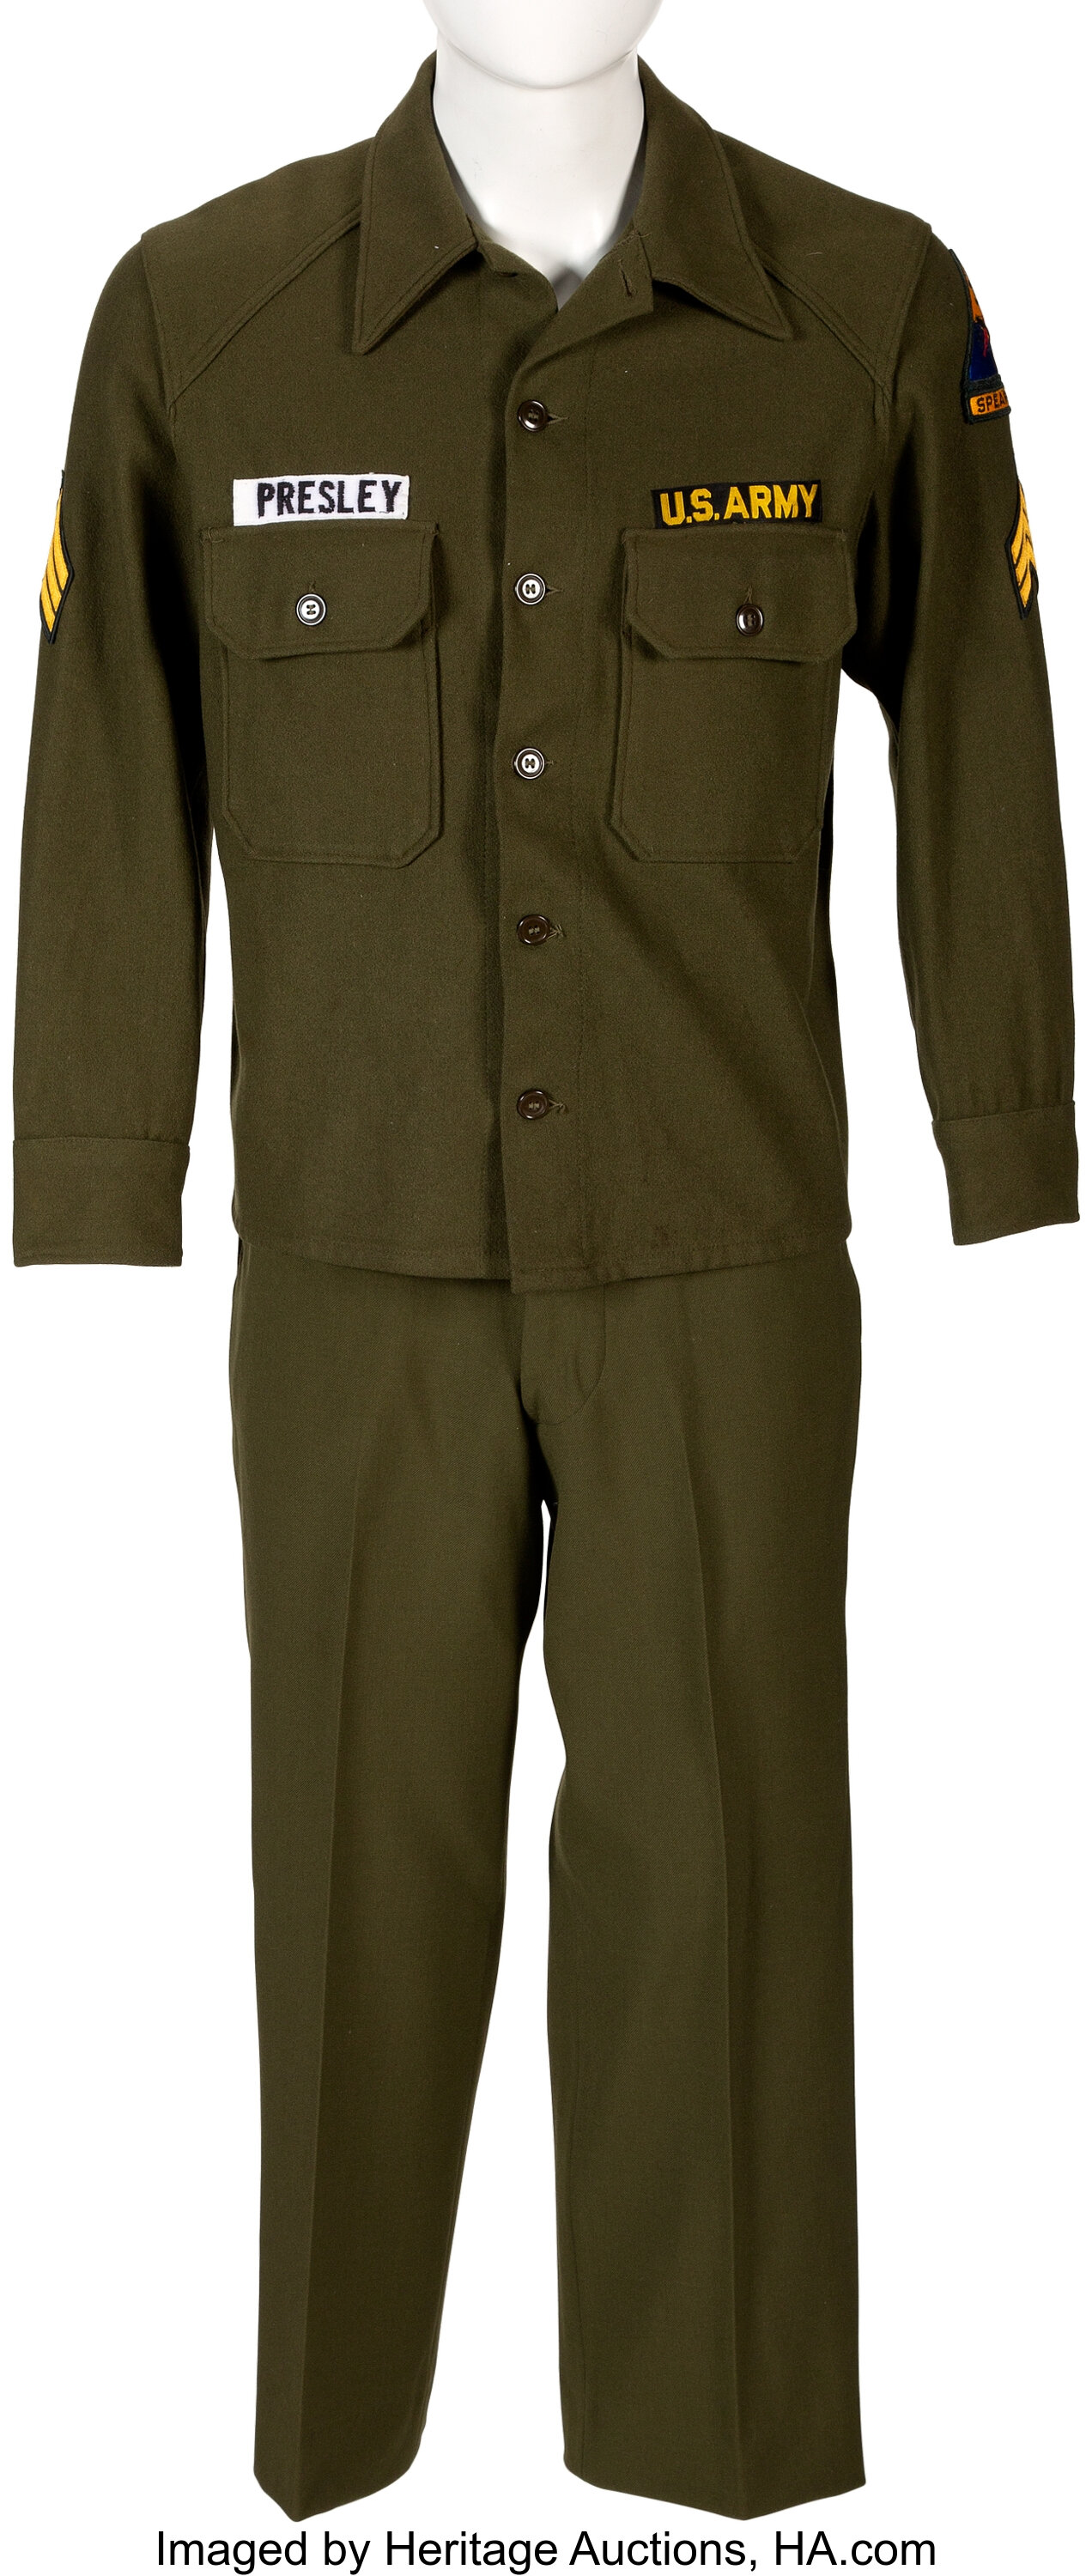 elvis presley army uniform